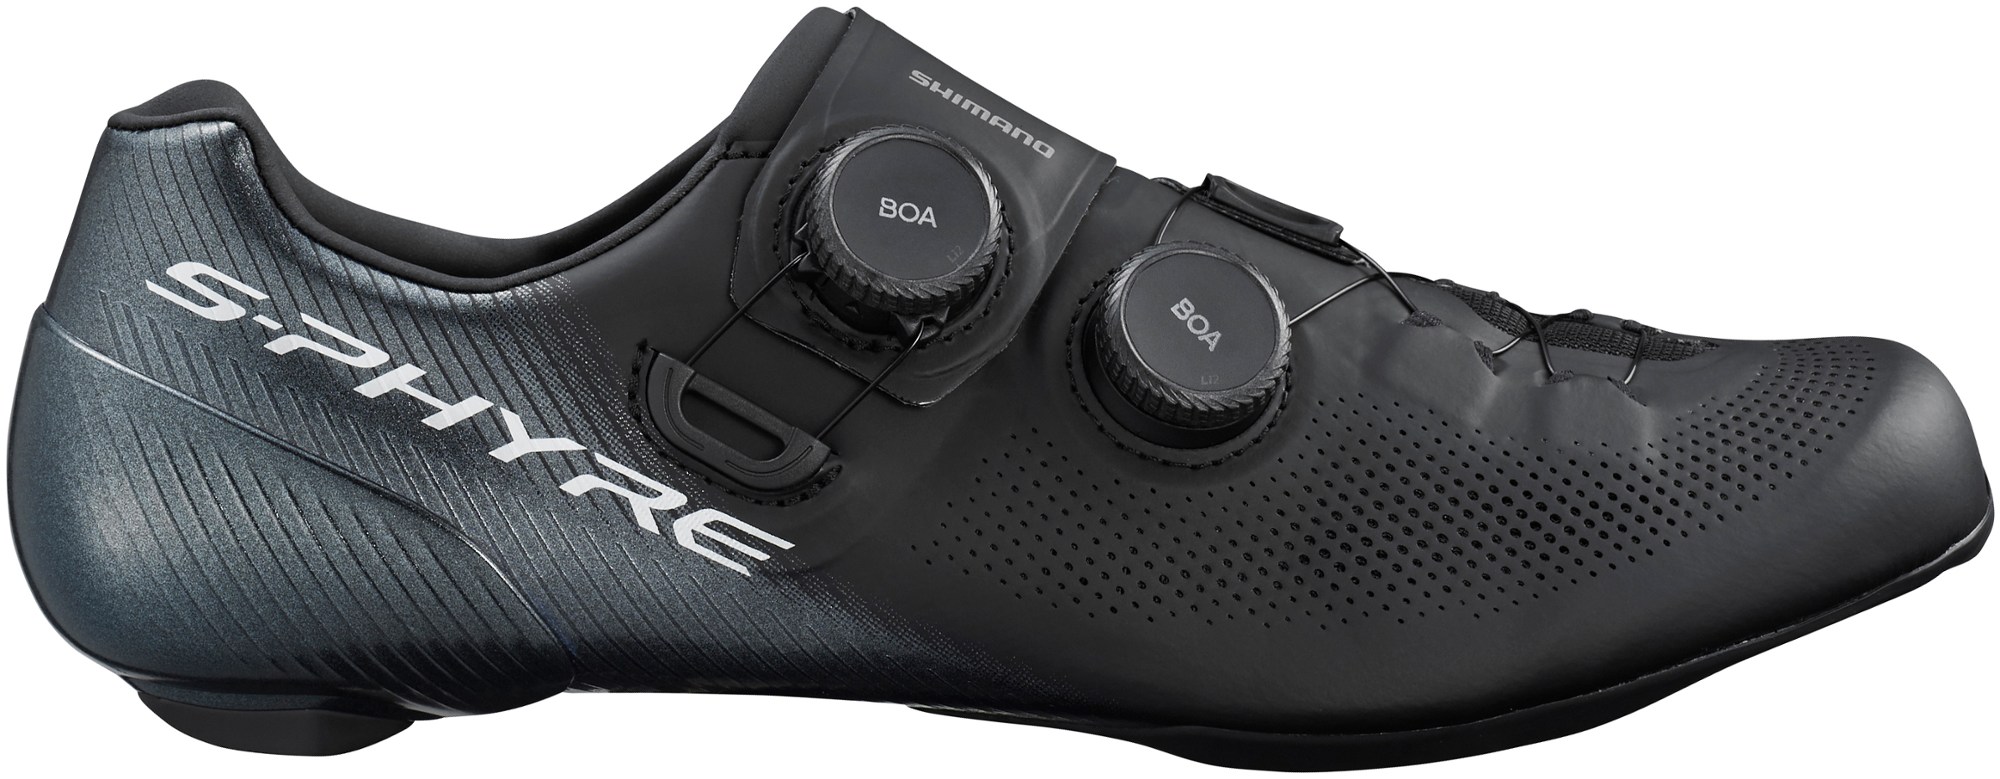 Велосипедная обувь RC9 — мужские Shimano, черный цена и фото